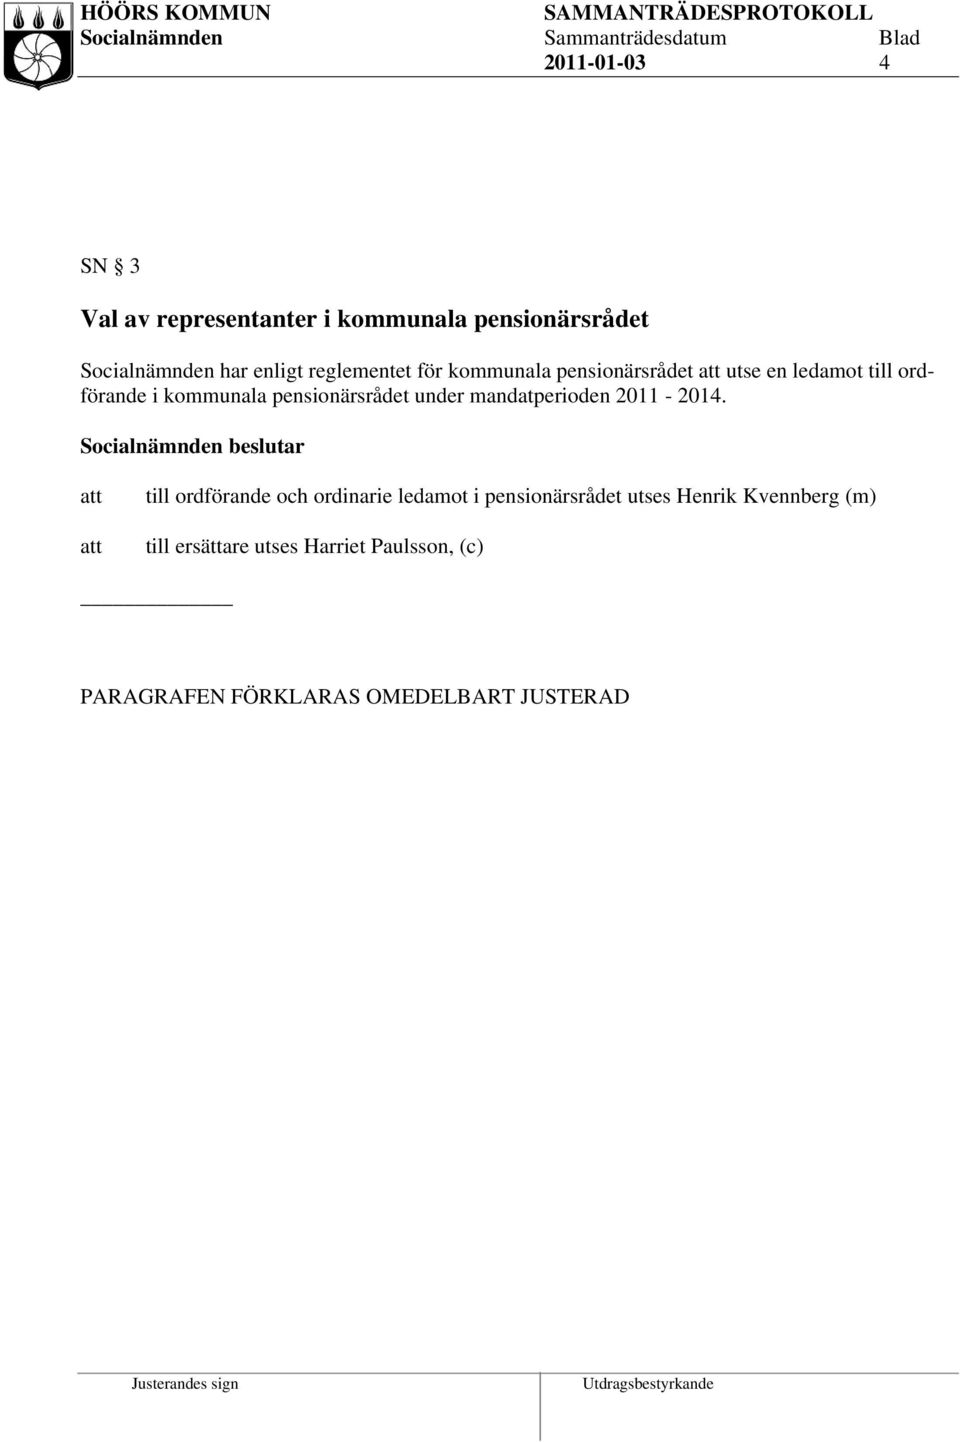 pensionärsrådet under mandatperioden 2011-2014.